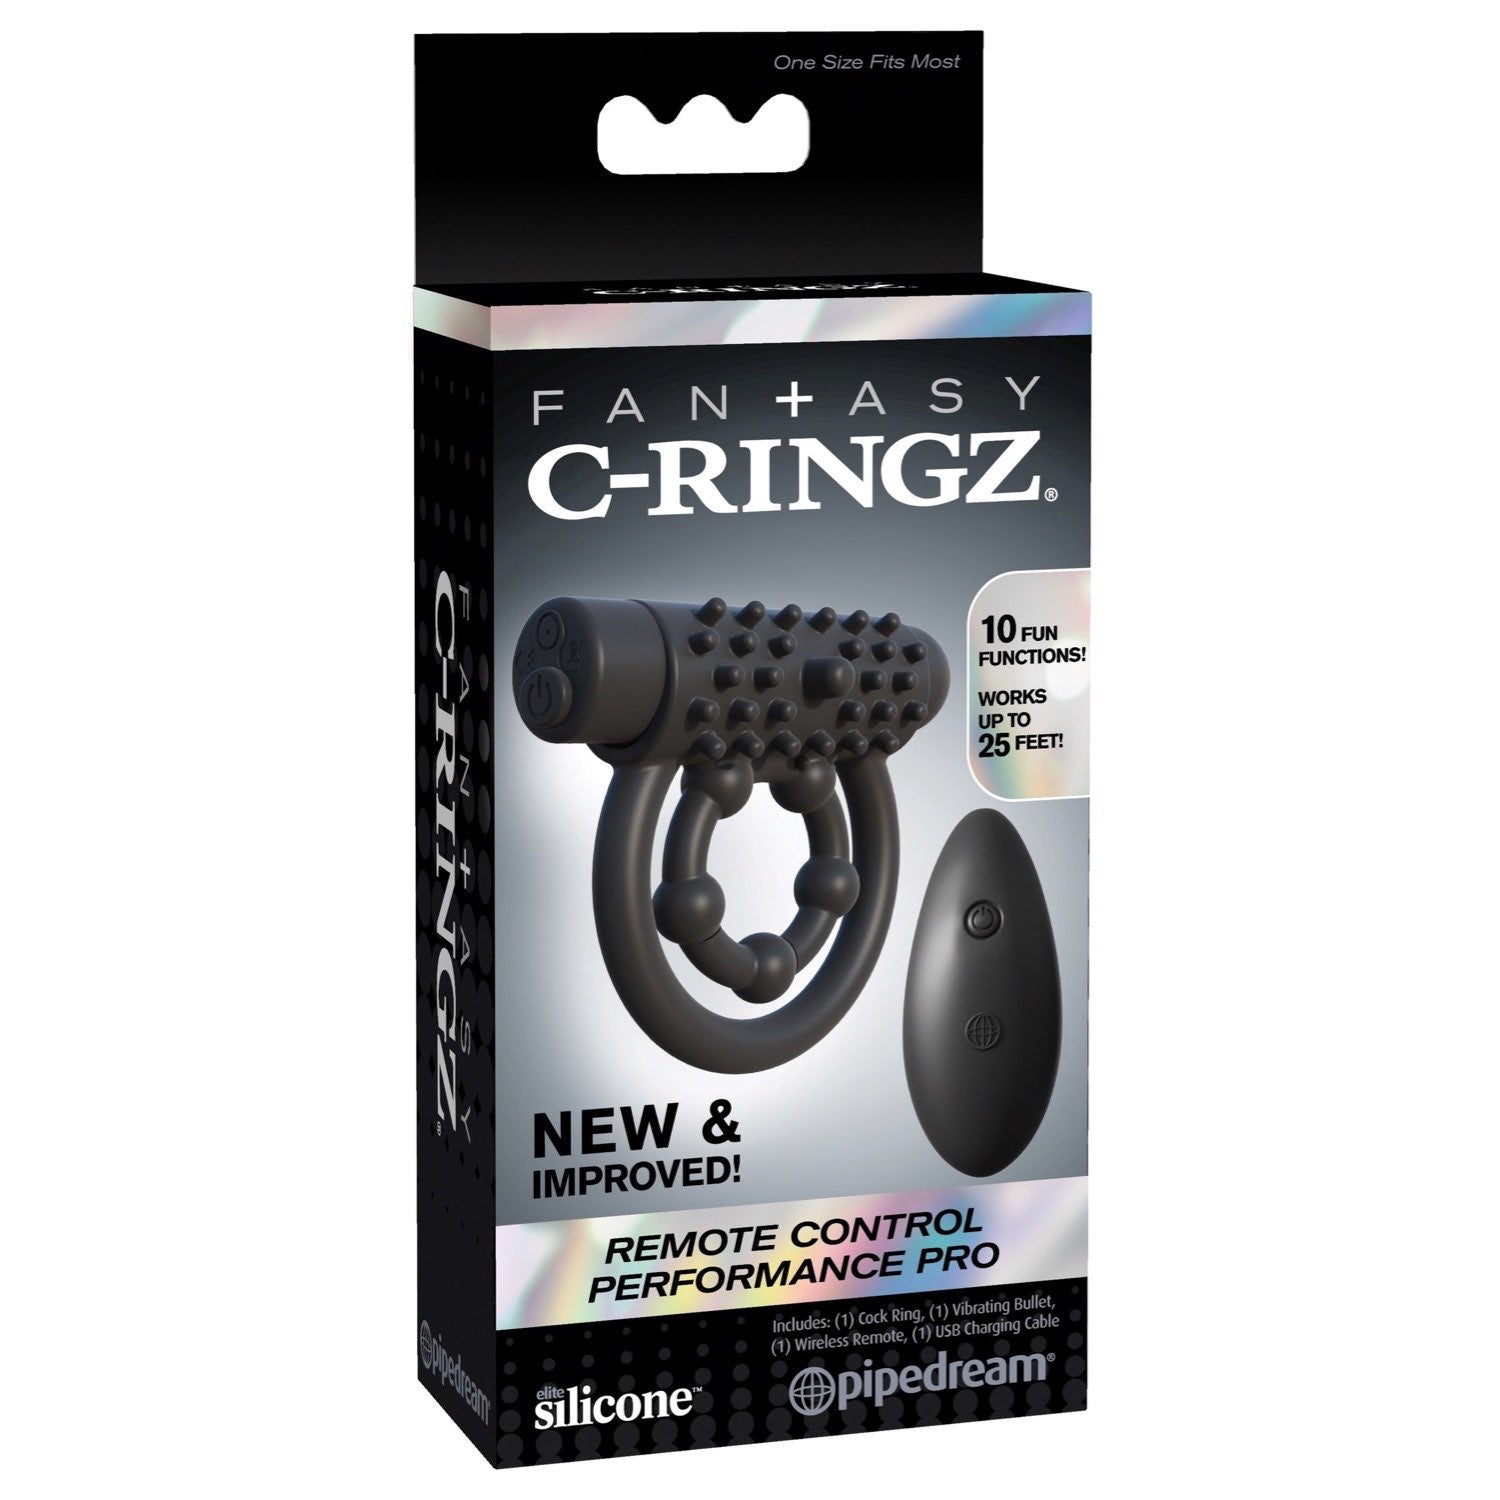 幻想C环 Fantasy C-ringz 远程控制性能 Pro - 黑色振动旋塞和球环，带遥控器 by Pipedream